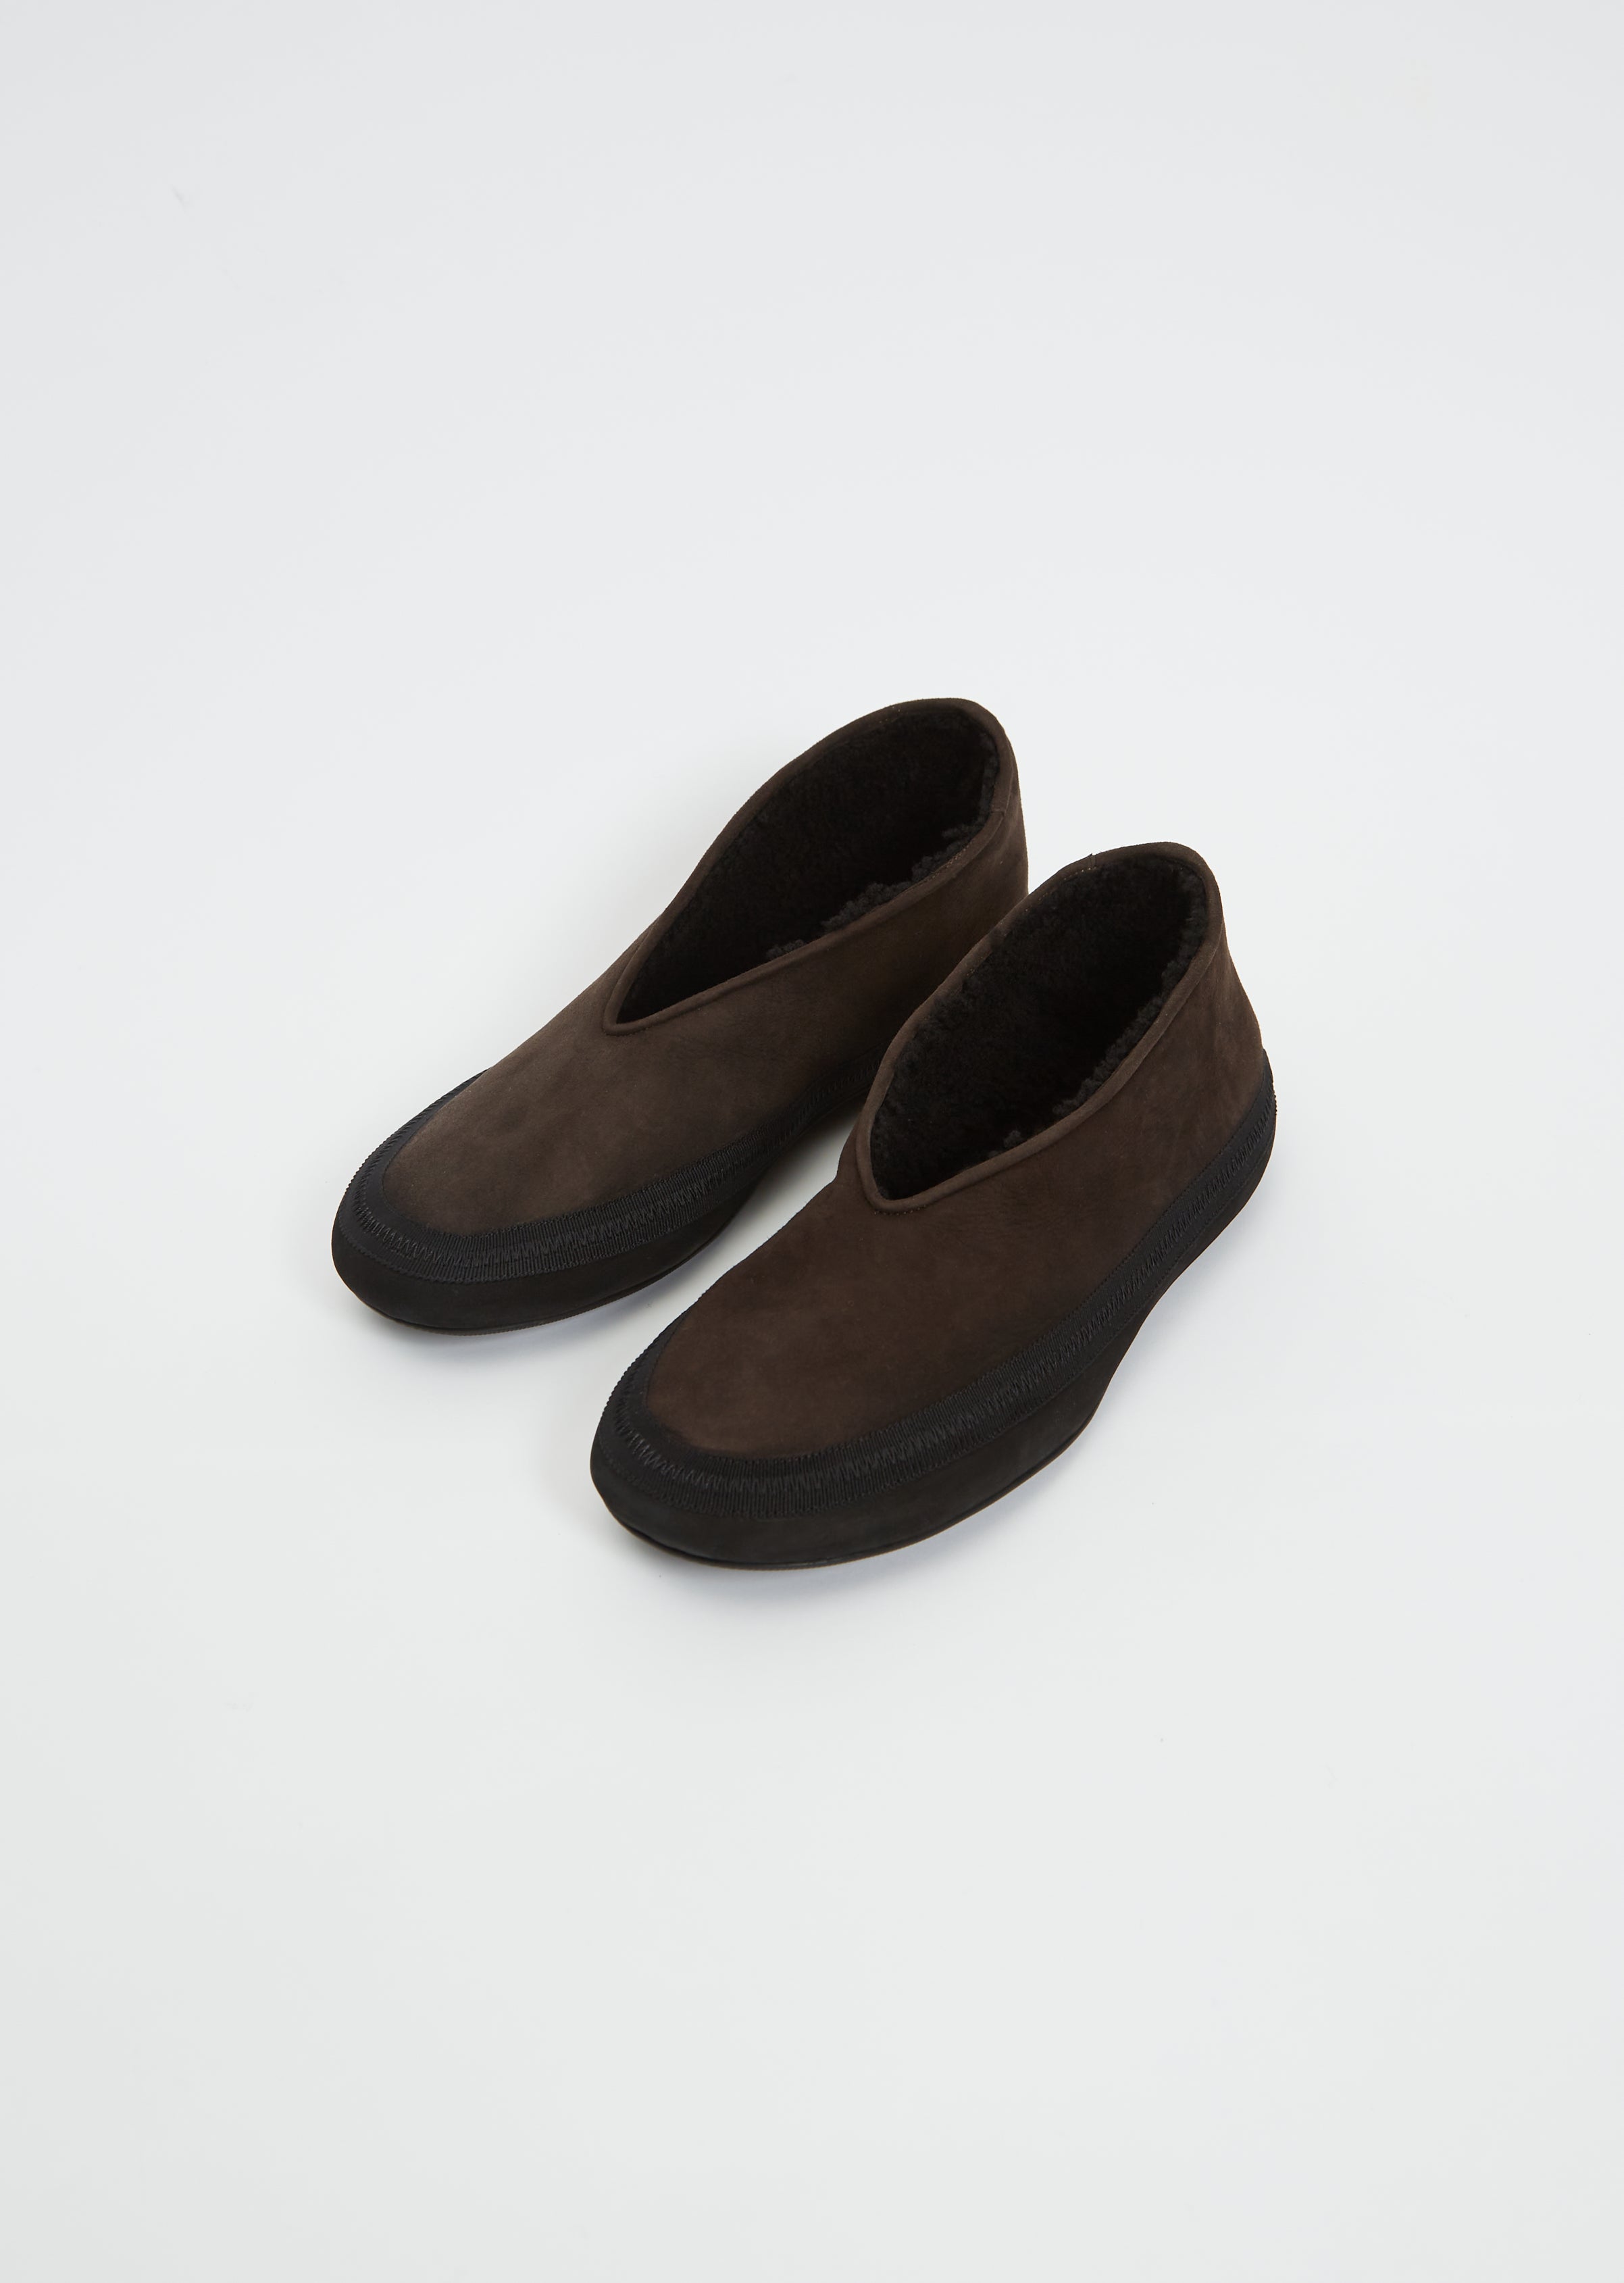 UK 3. LUNA Shoe. 4544 – FAIRYSTEPS. Shoes & Such